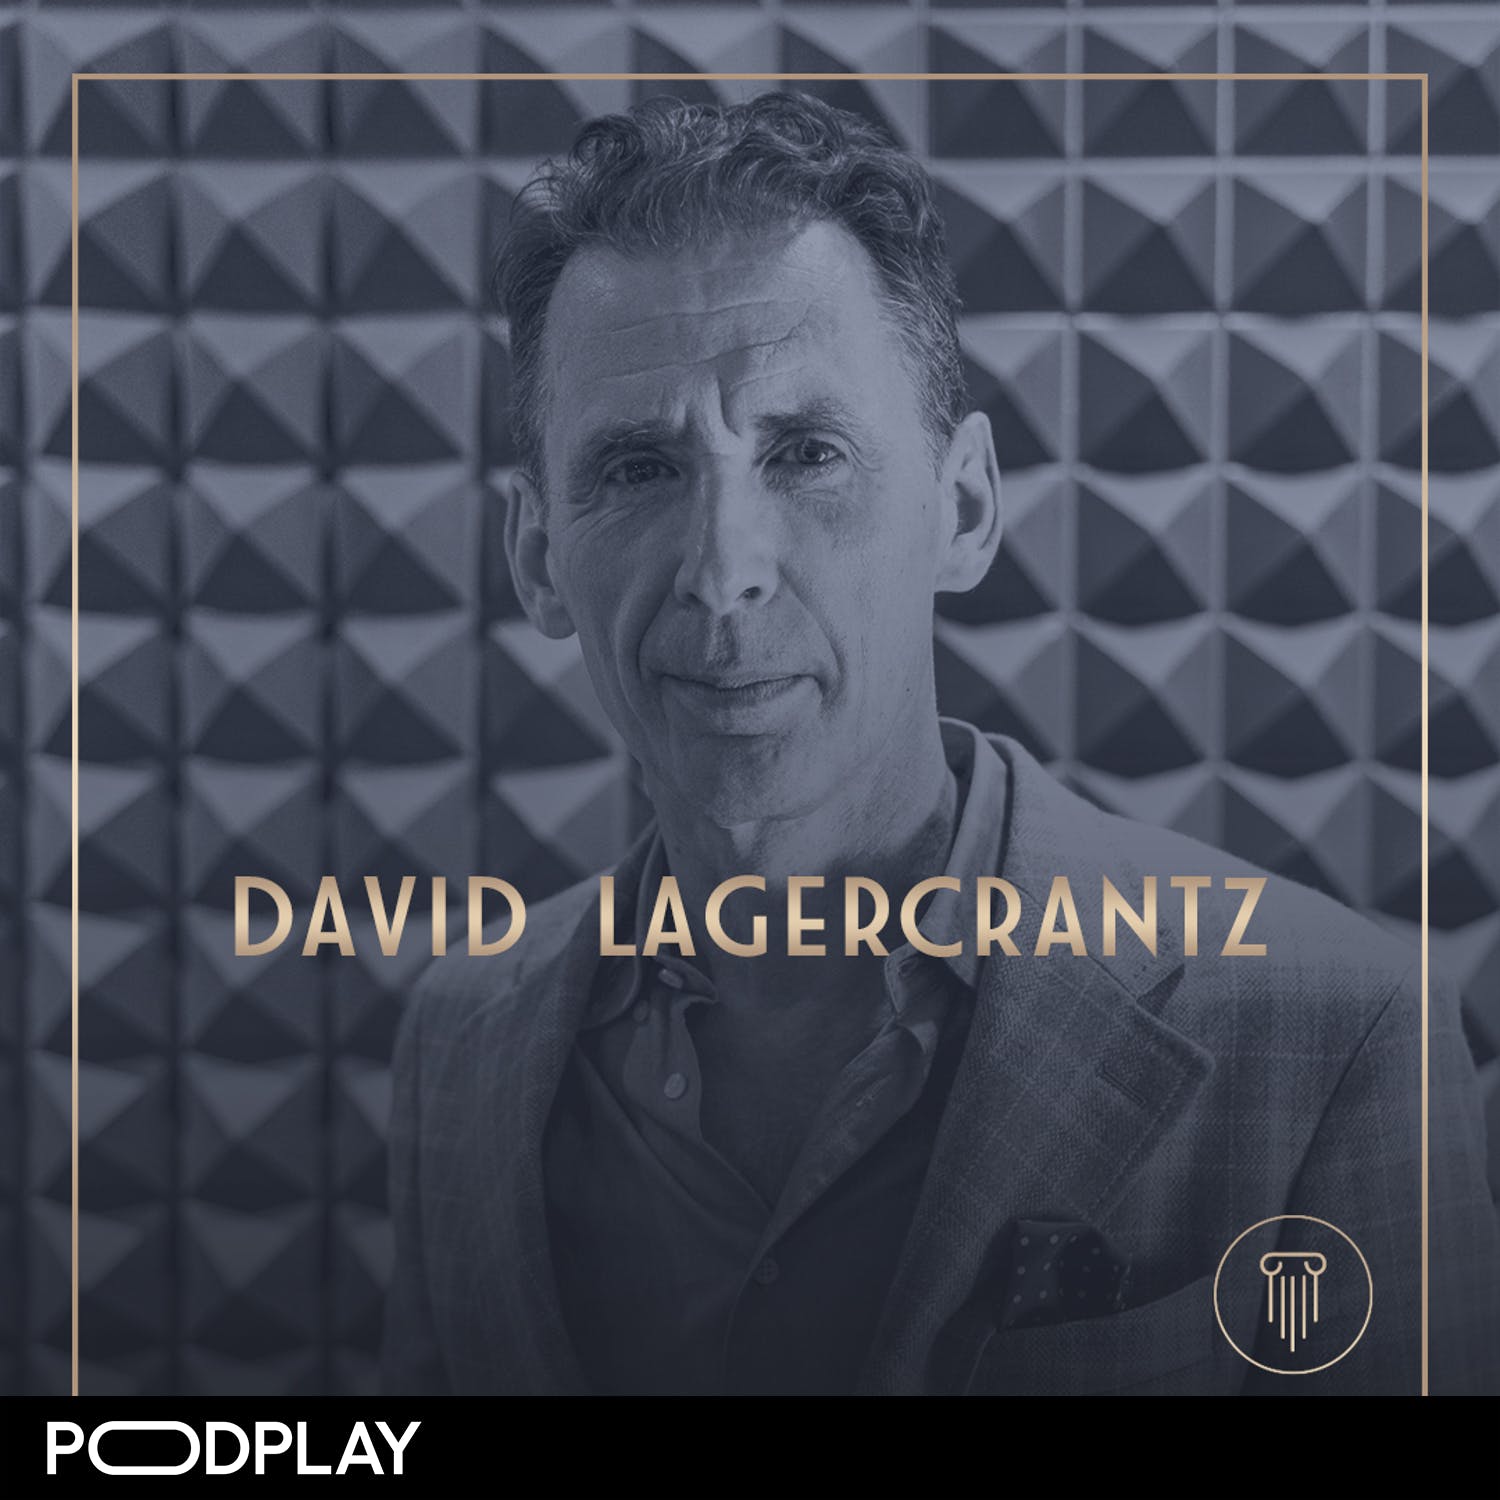 331. David Lagercrantz - Framgång kan knäcka en människa, Original